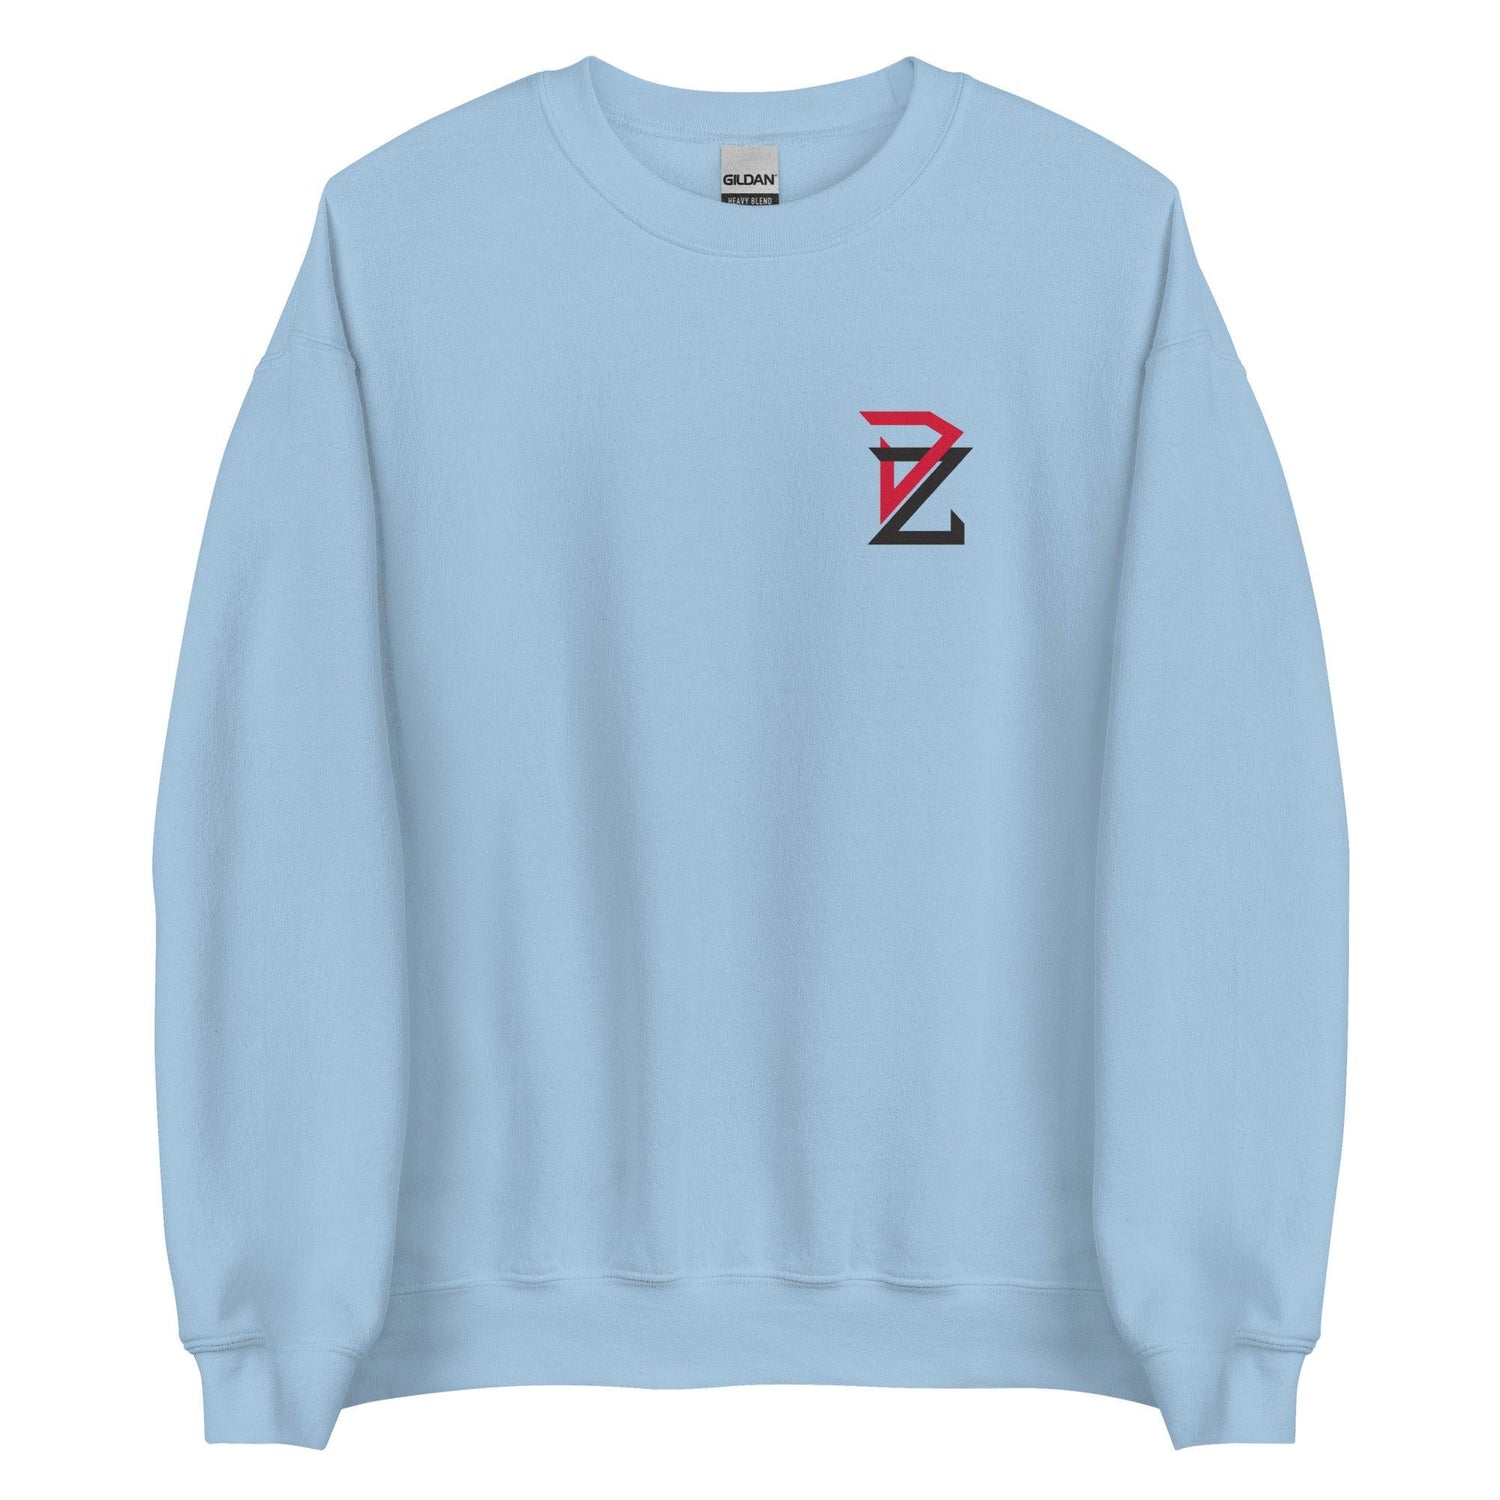 Donovan Zsak "Essential" Sweatshirt - Fan Arch